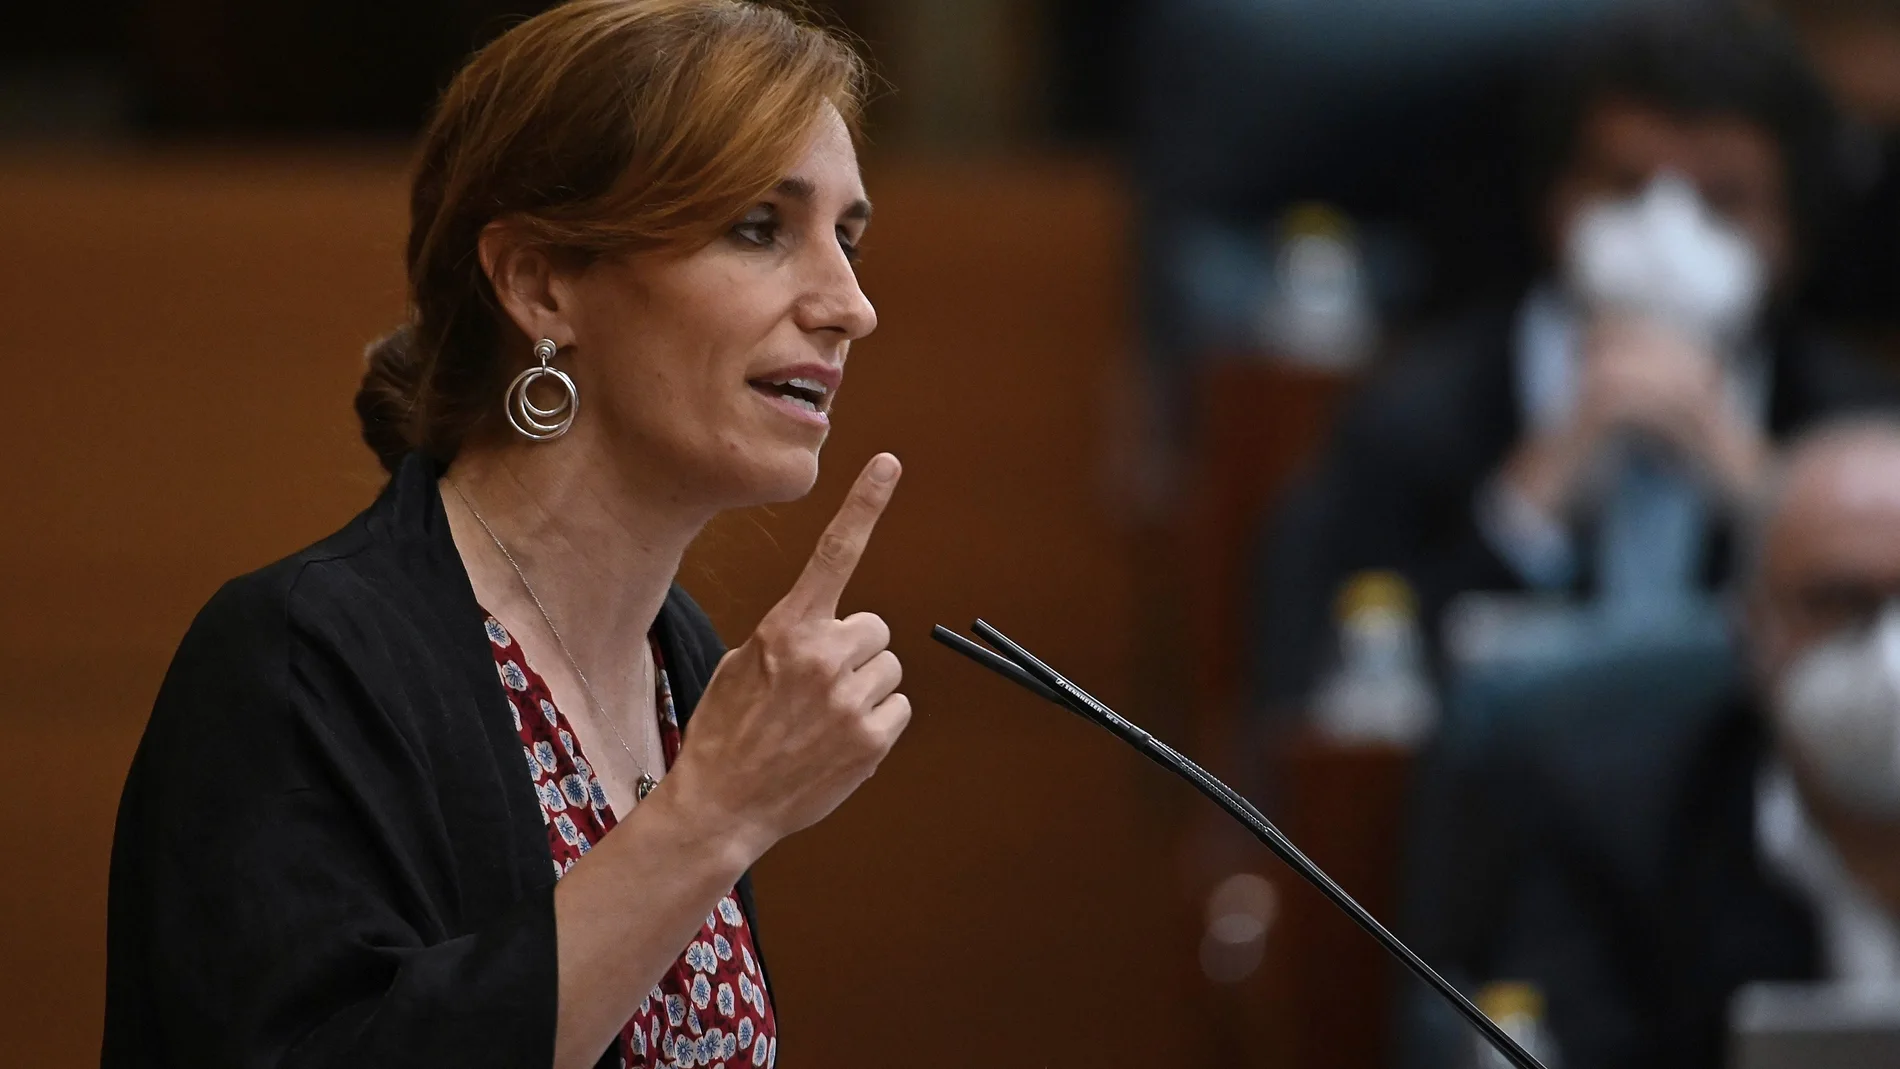 La portavoz de Más Madrid en la Asamblea, Mónica García